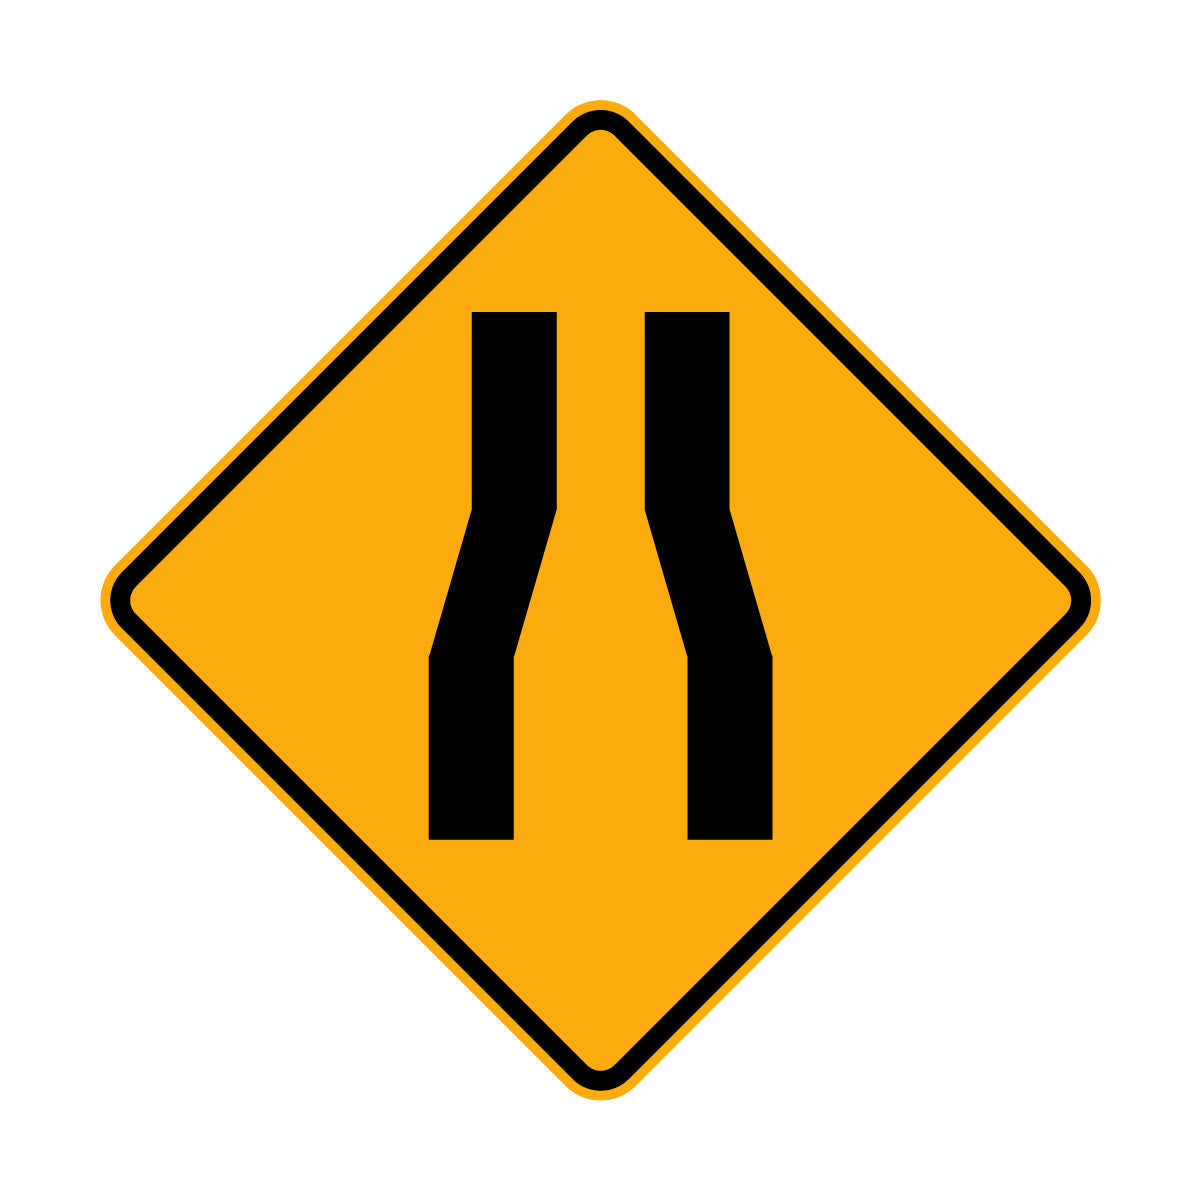 Warning: Road Narrows Sign